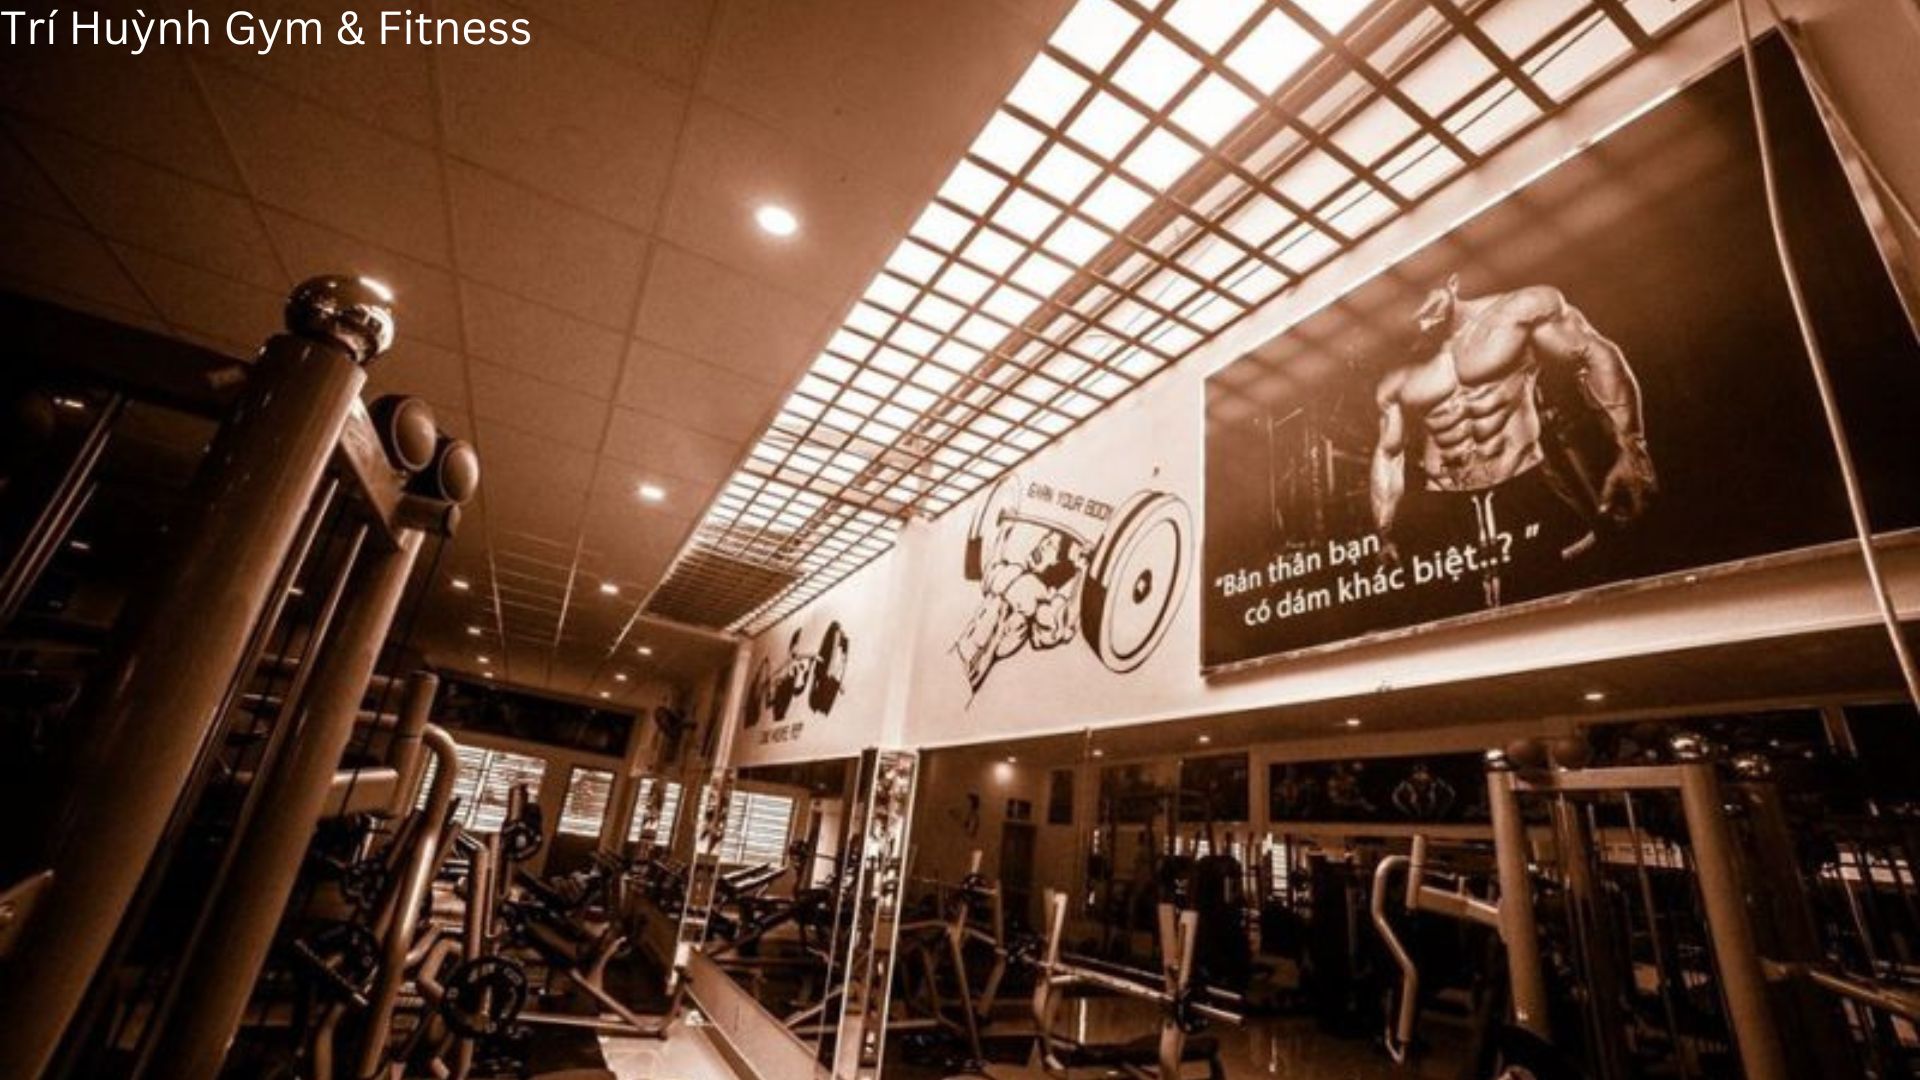 Trí Huỳnh Gym and Fitness - Phòng tập gym chất lượng ở Đà Nẵng